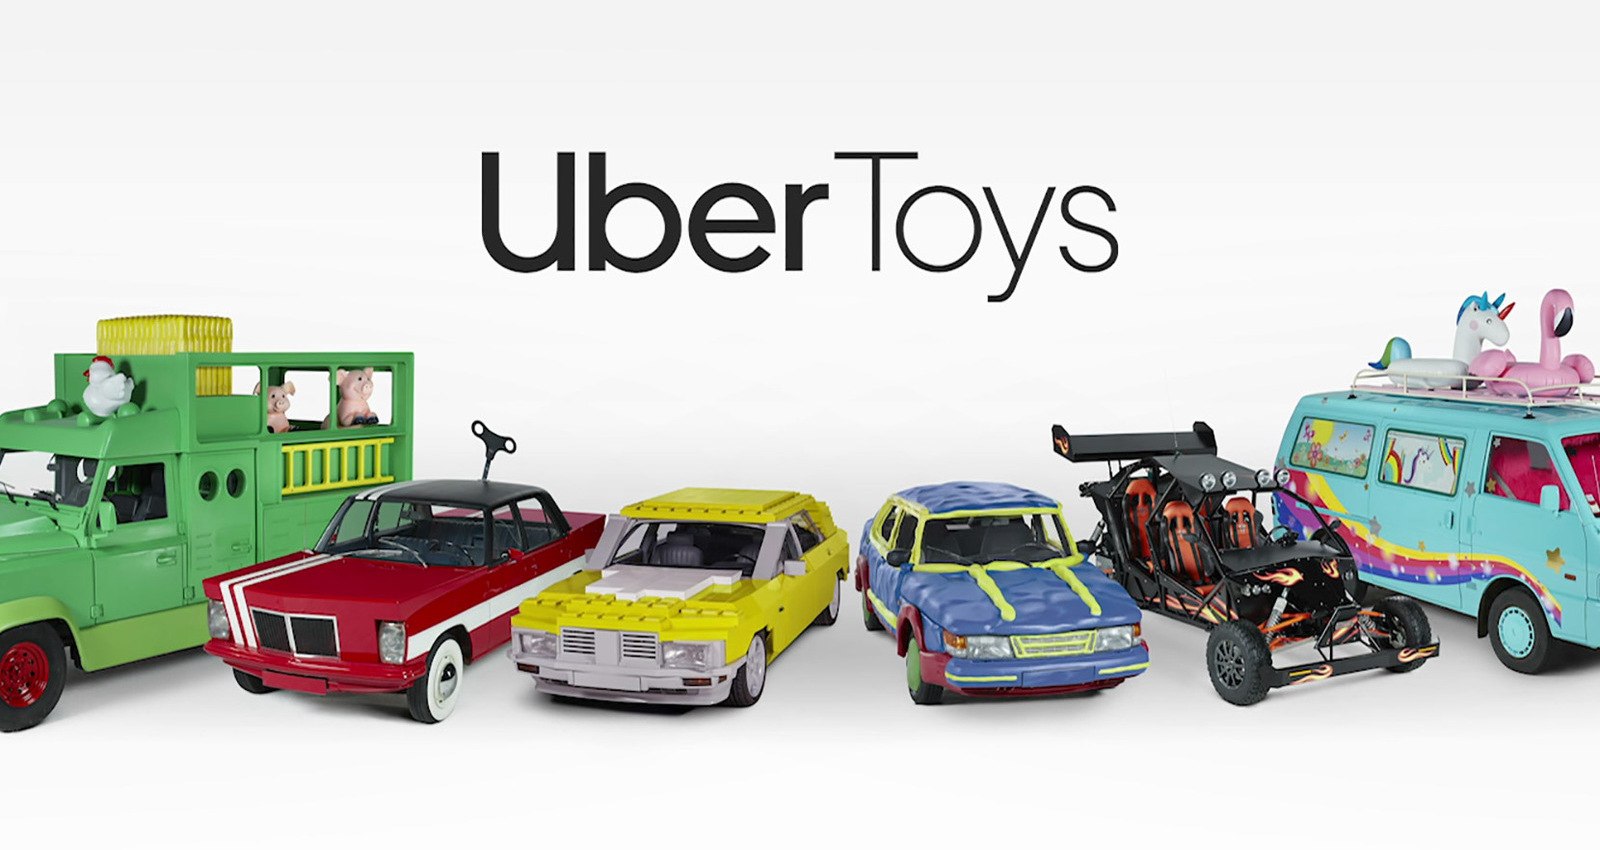 Uber Toys